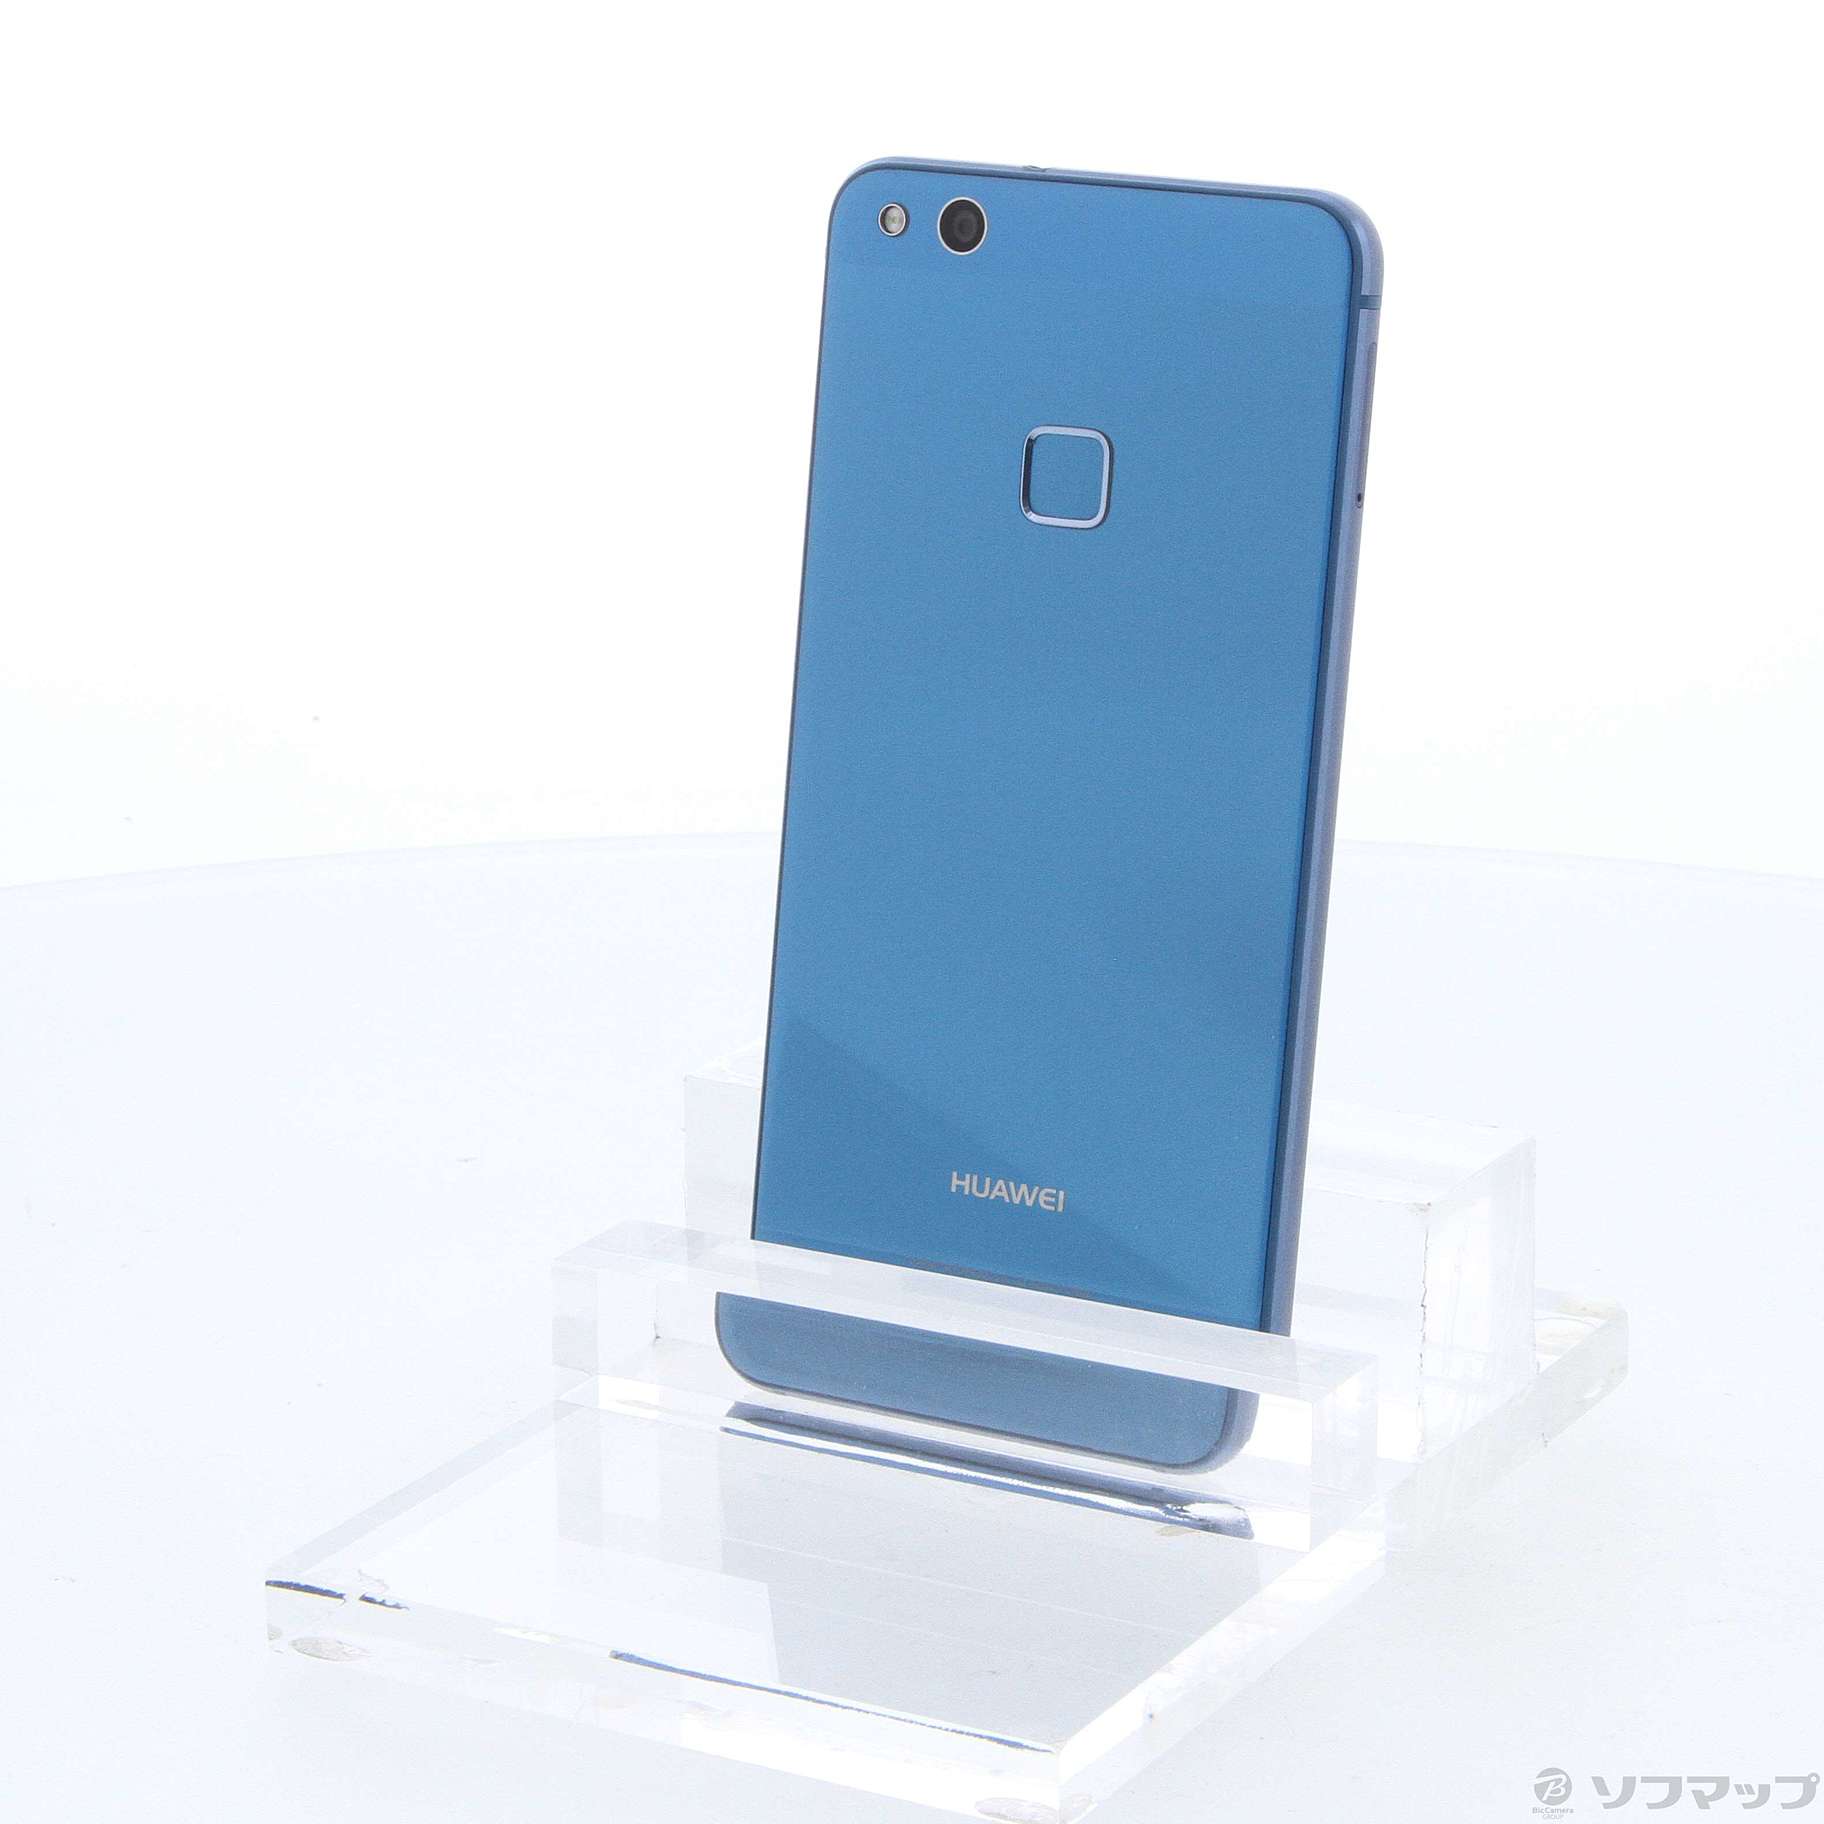 HUAWEI P10 lite Blue 32 GB SIMフリー - スマートフォン本体